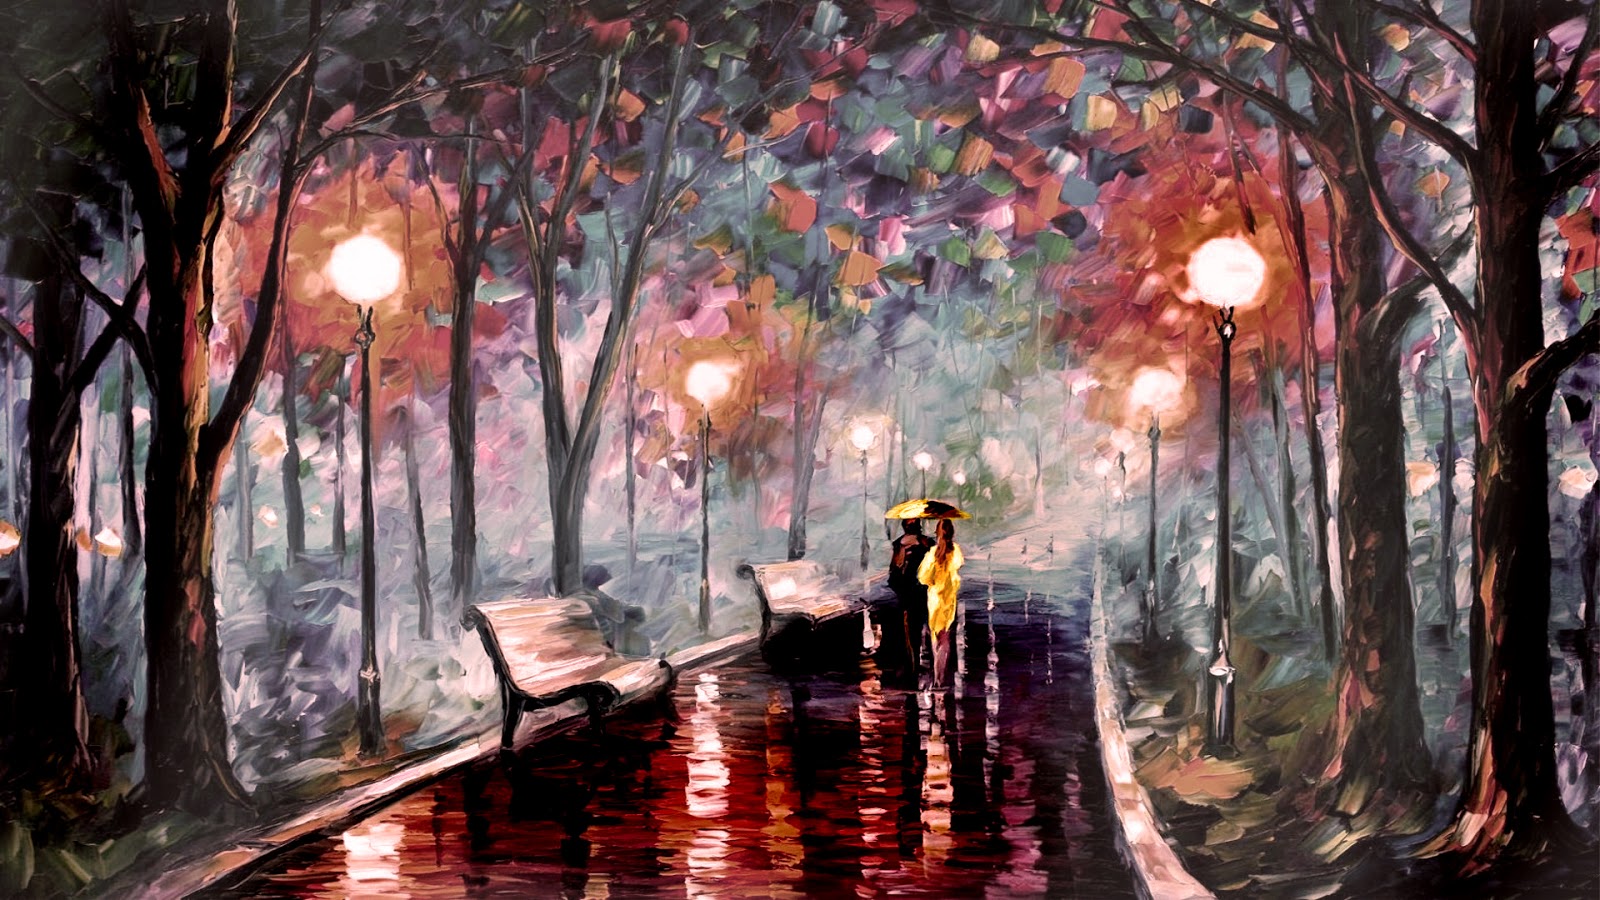 雨のロマンチックな壁紙,ペインティング,木,自然の風景,水彩絵の具,アート